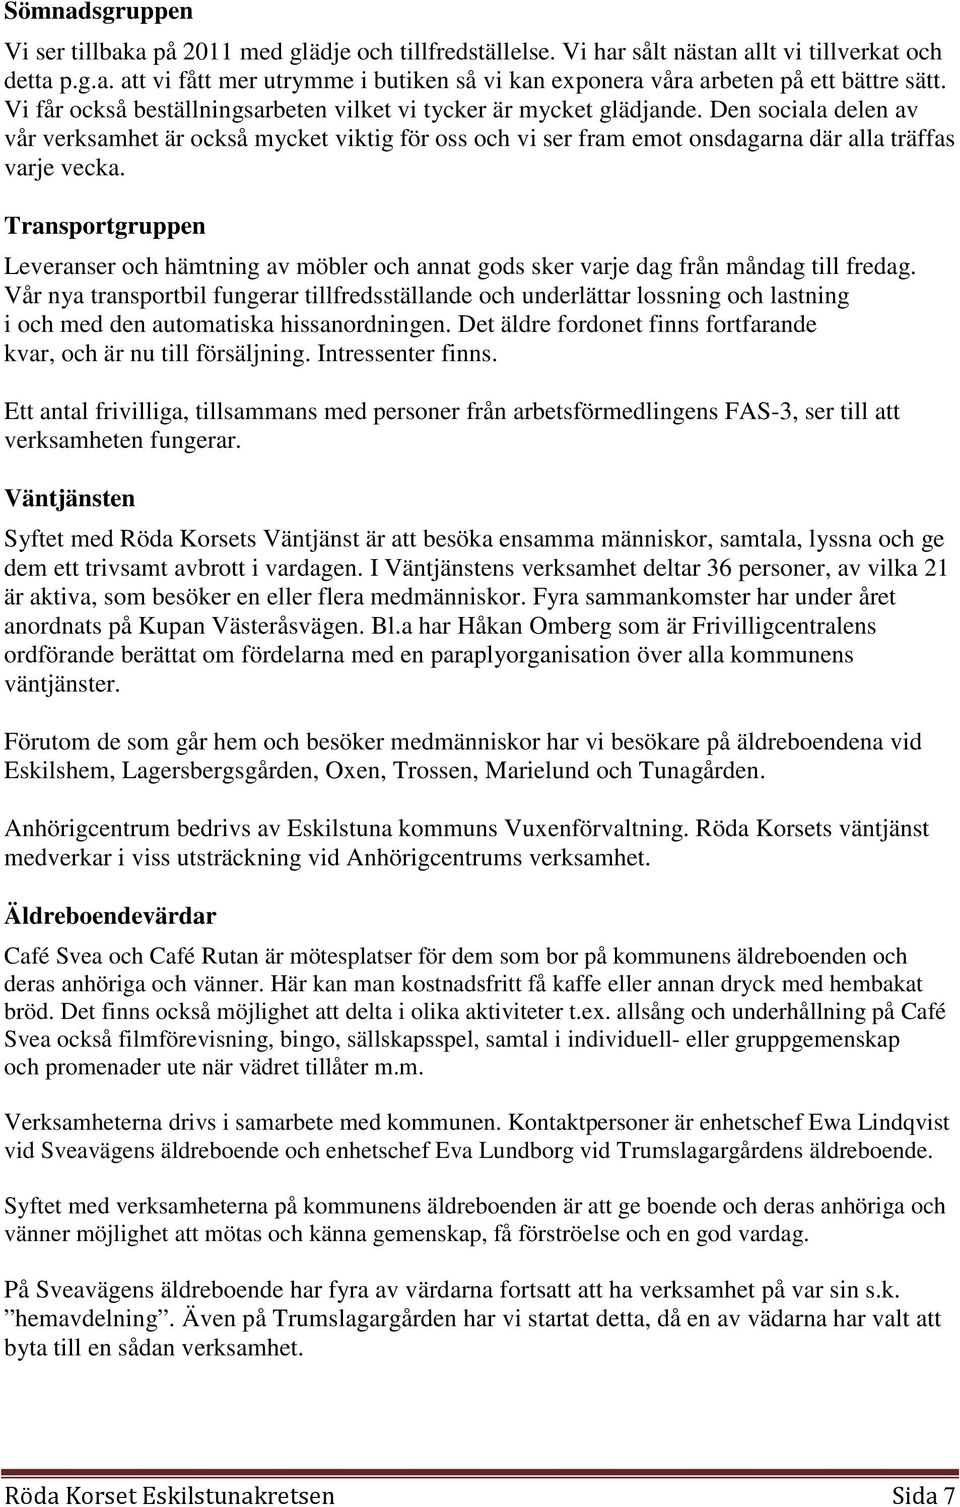 Röda Korset Eskilstunakretsen - PDF Free Download